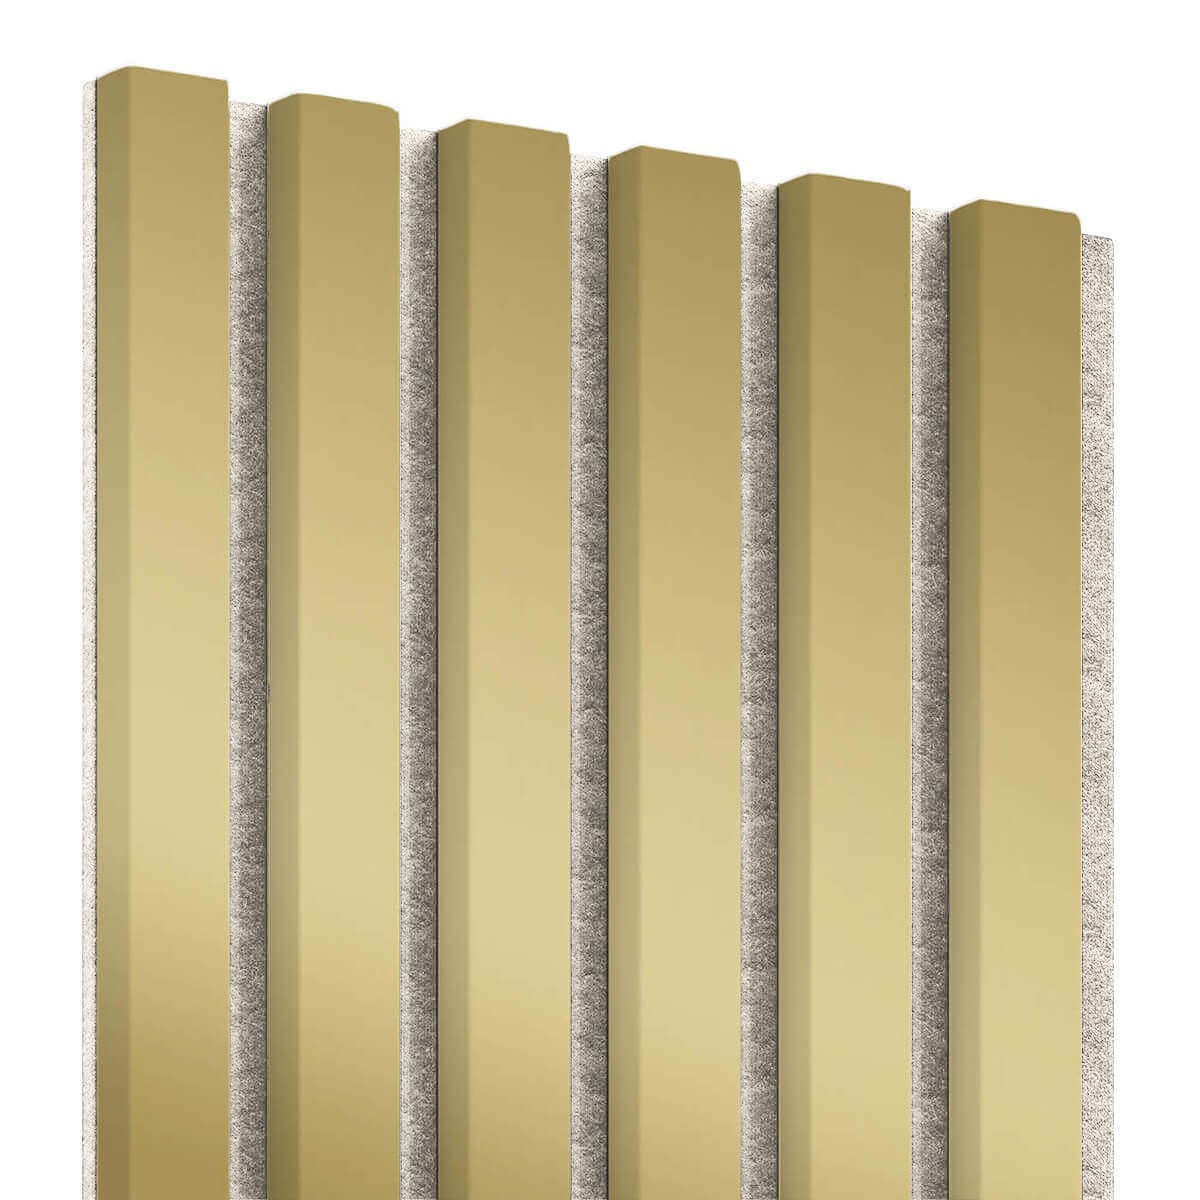 75 x günstig Kaufen-Lamellenleisten aus MDF auf Filz 275 x 30 cm - Gold. Lamellenleisten aus MDF auf Filz 275 x 30 cm - Gold . 